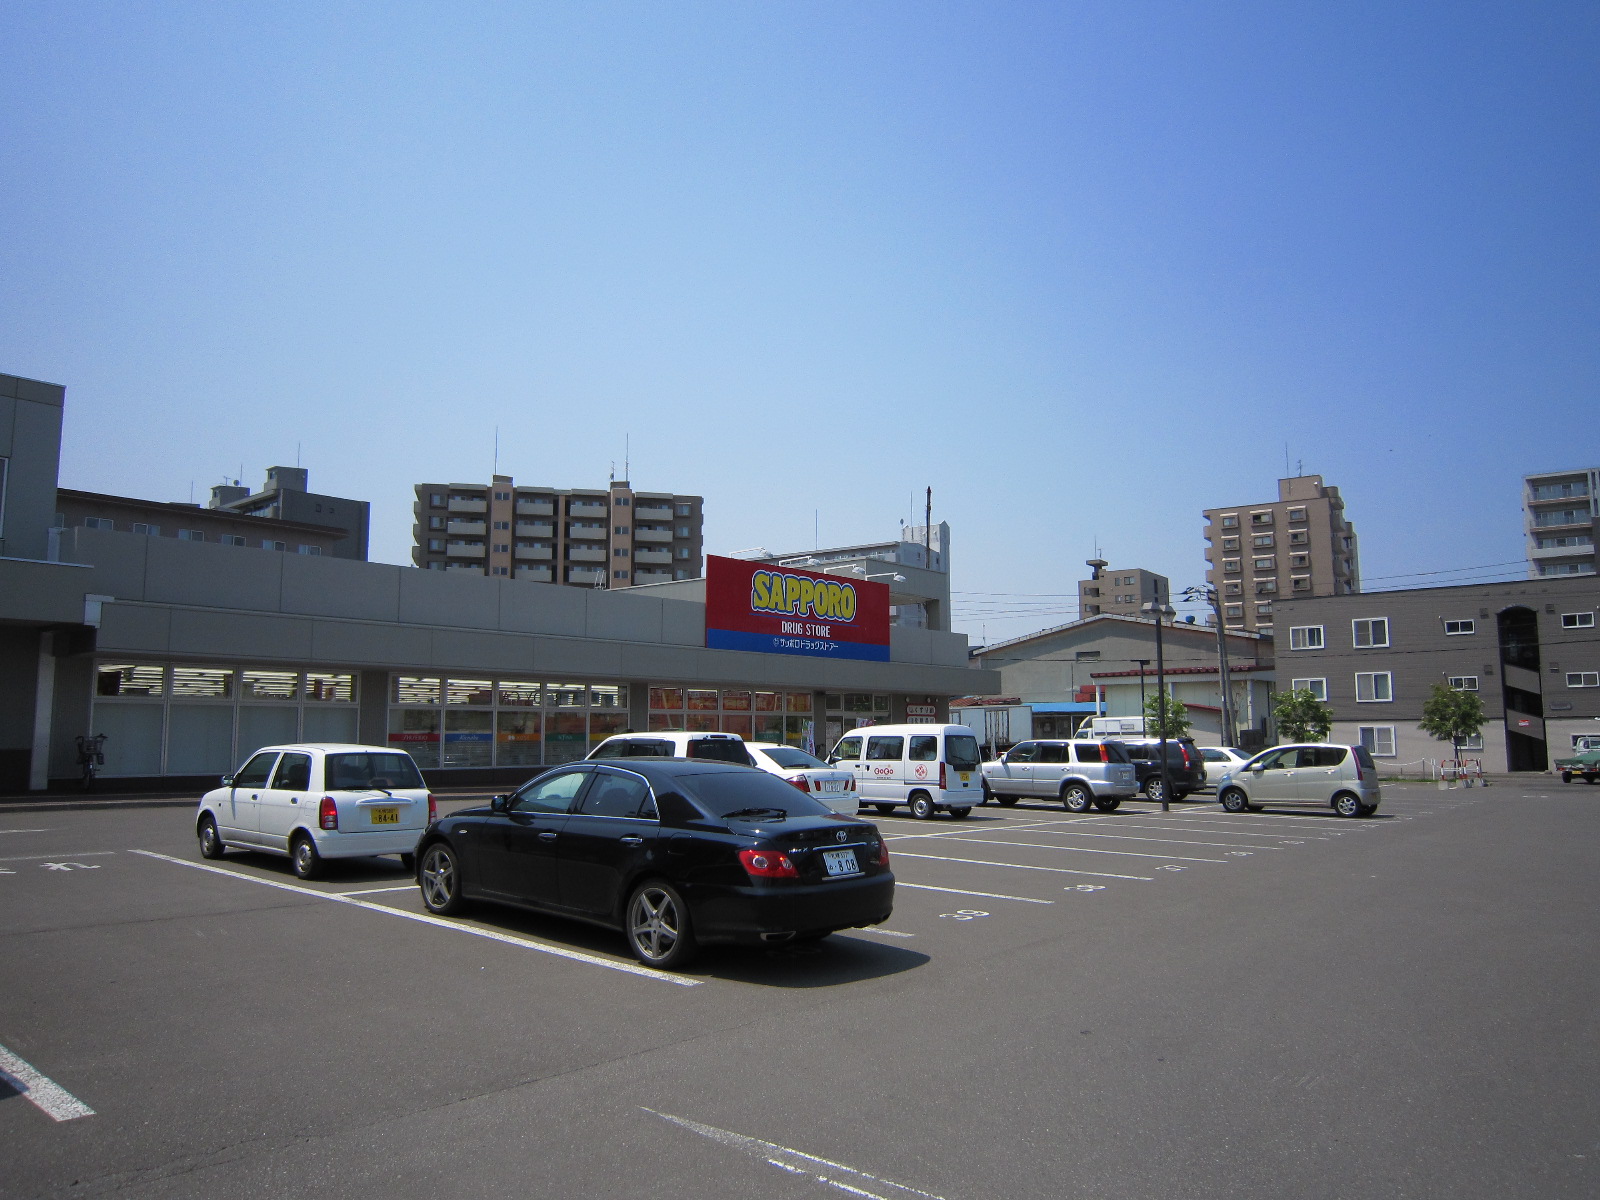 Dorakkusutoa. Sapporo drugstores Higashisapporo shop 1386m until (drugstore)